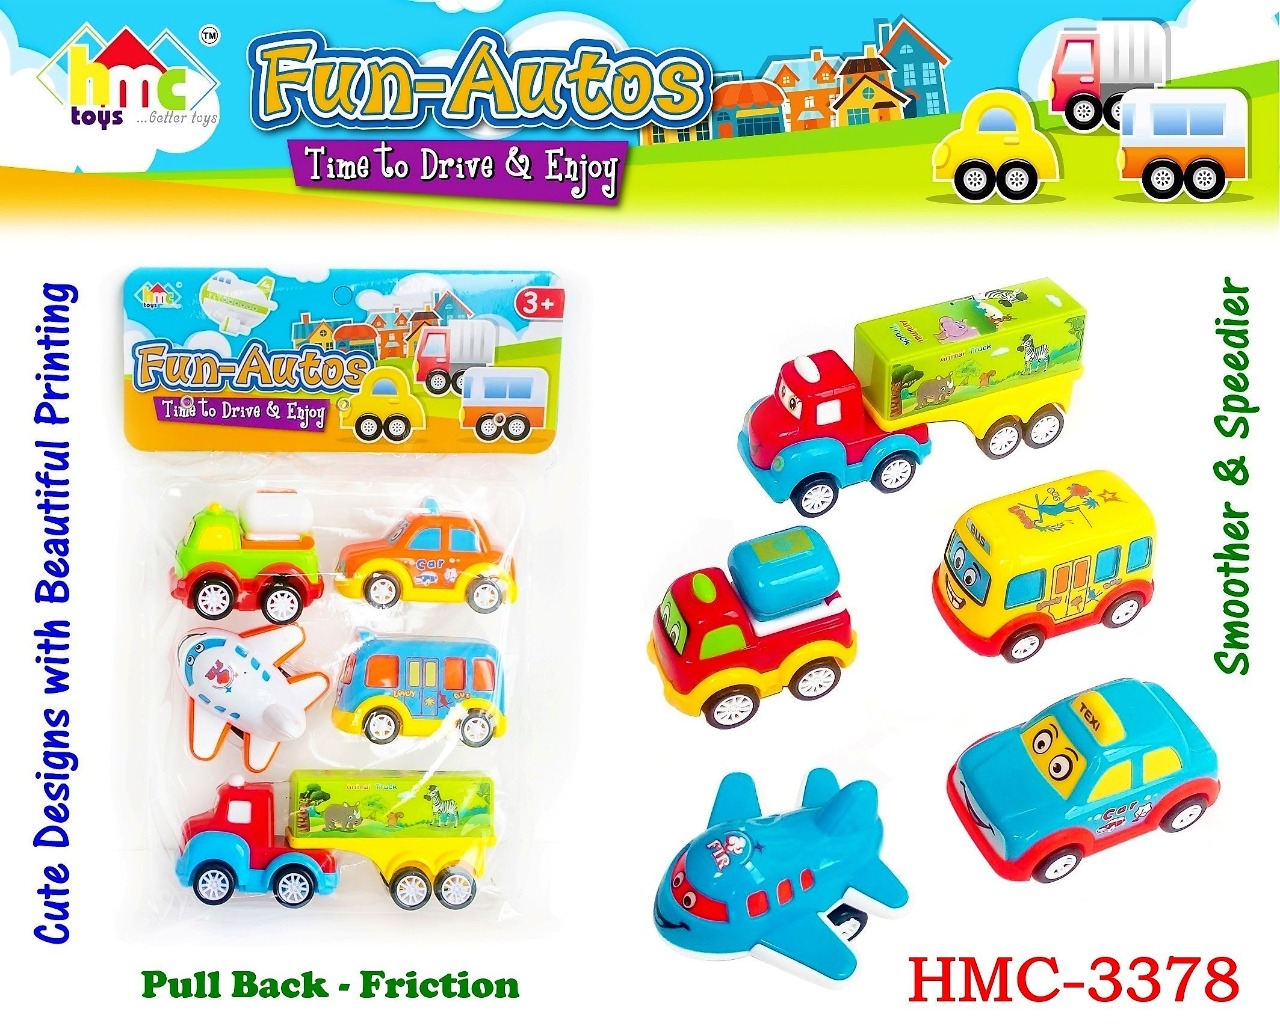 Hmc fun-autos car set